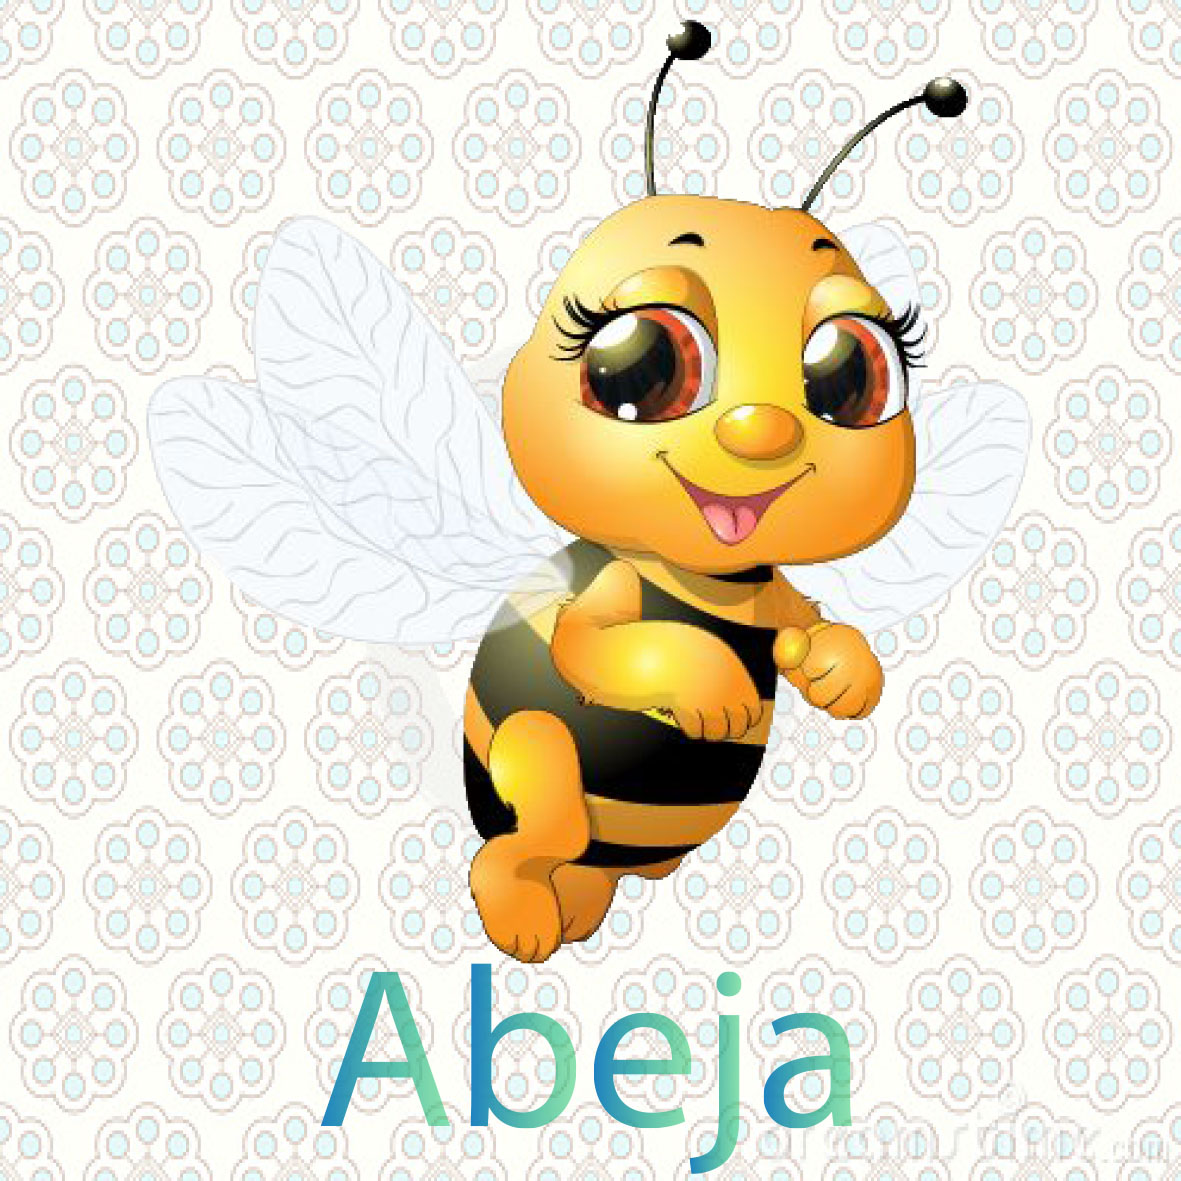 imagen de una abeja, son insectos de color amarillo con rayas negras tiene dos alas y un aguijón, viven en colmenas las abejas producen la miel 